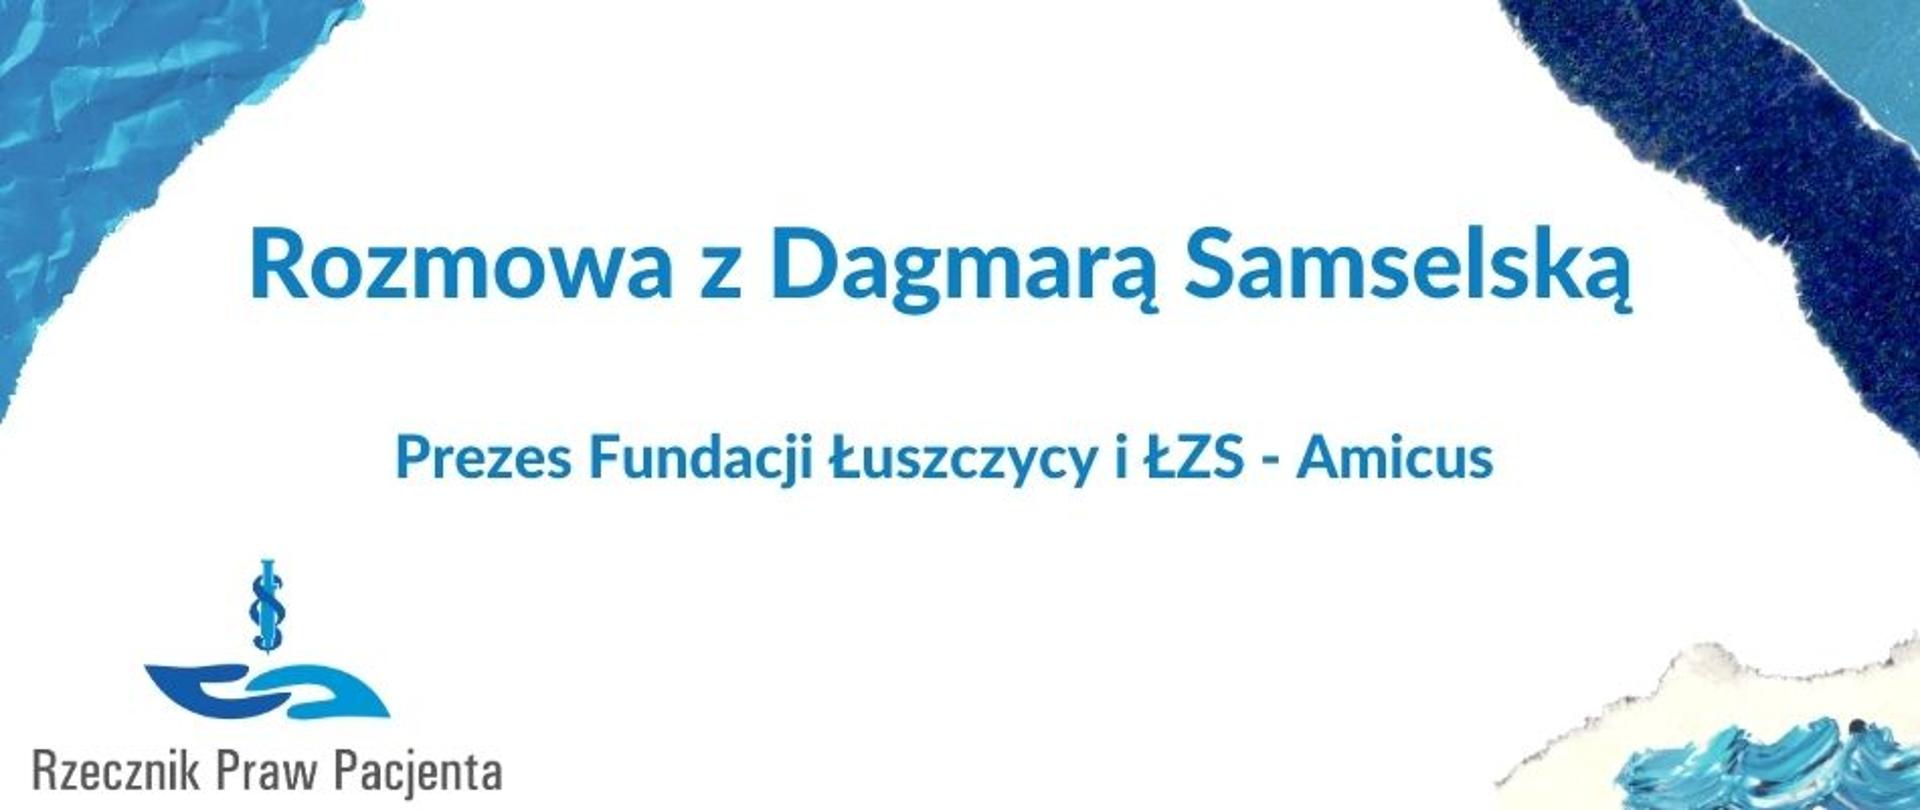 Rozmowy z Ekspertami - Dagmara Samselska